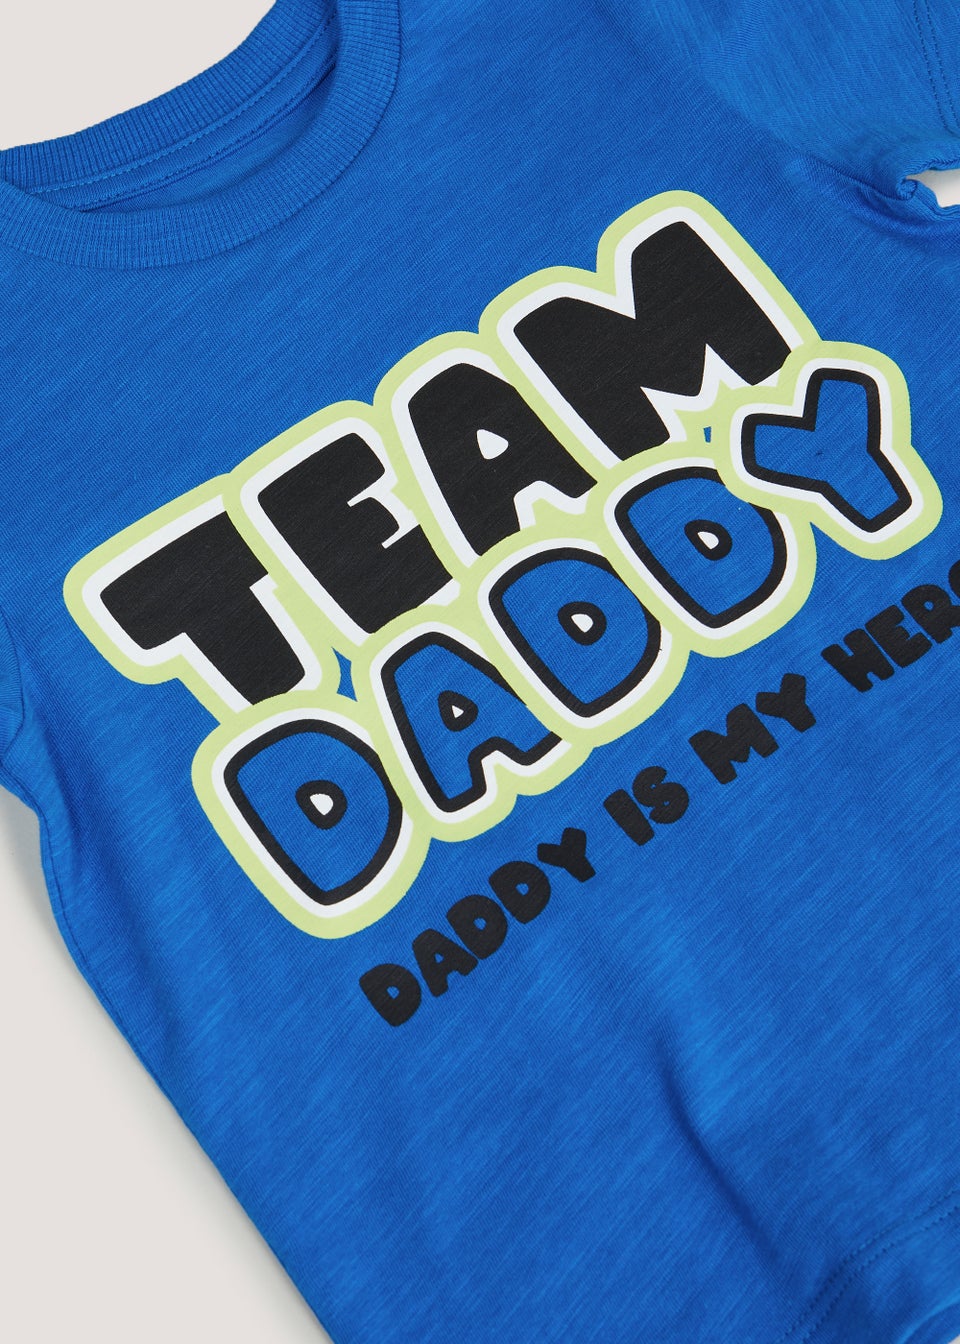 Boys Blue Team Daddy T-Shirt (9mths-6yrs)